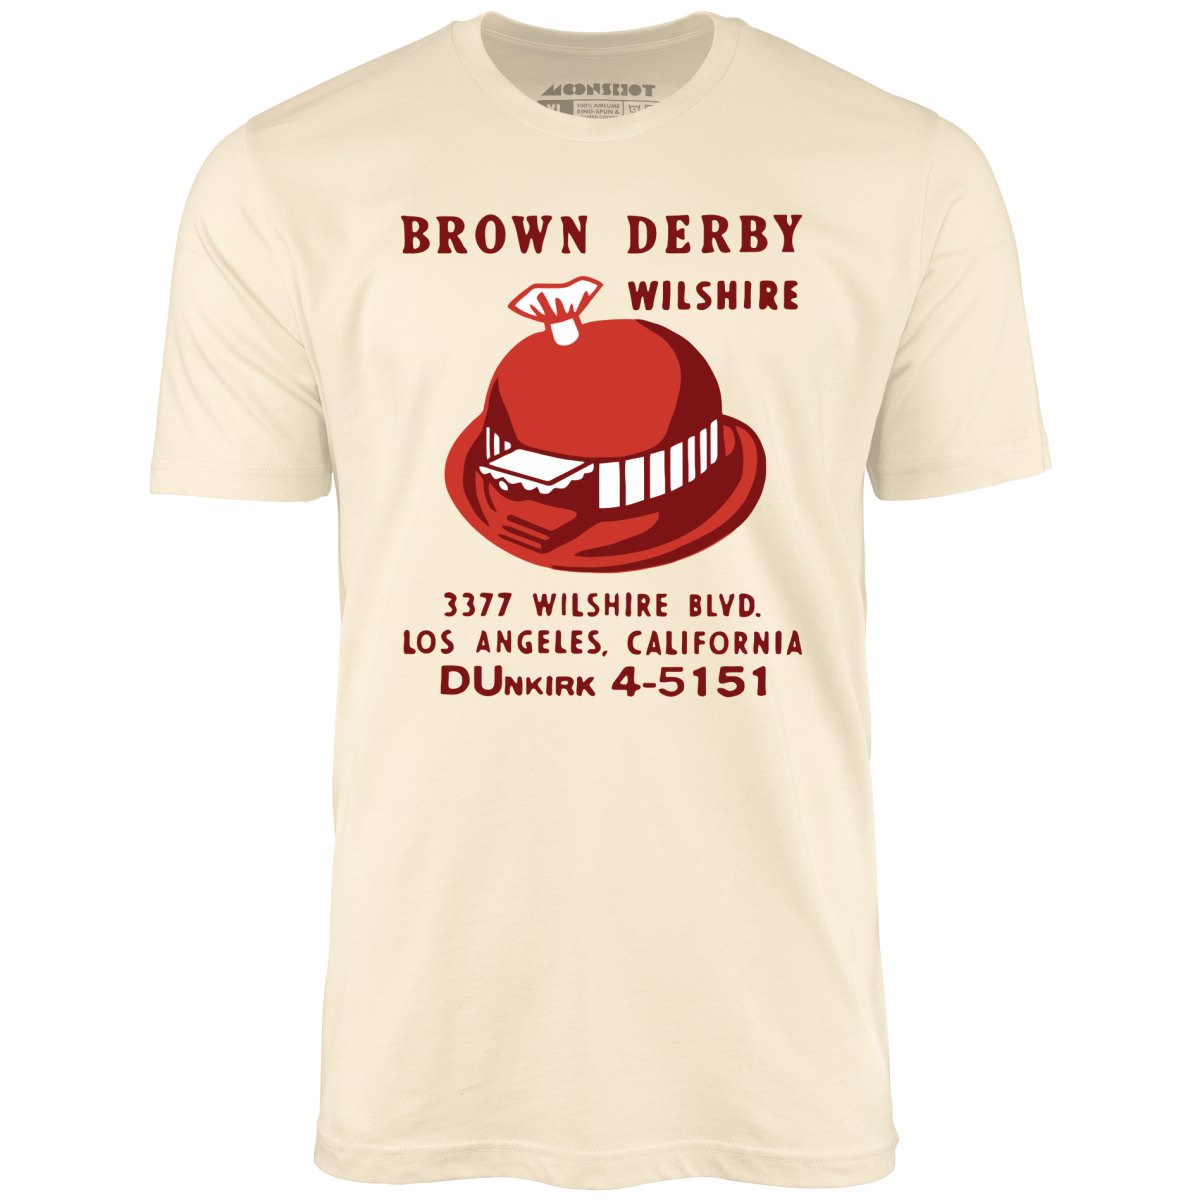 Brown Derby - Los Angeles, CA - Vintage Restaurant - Unisex T-Shirt